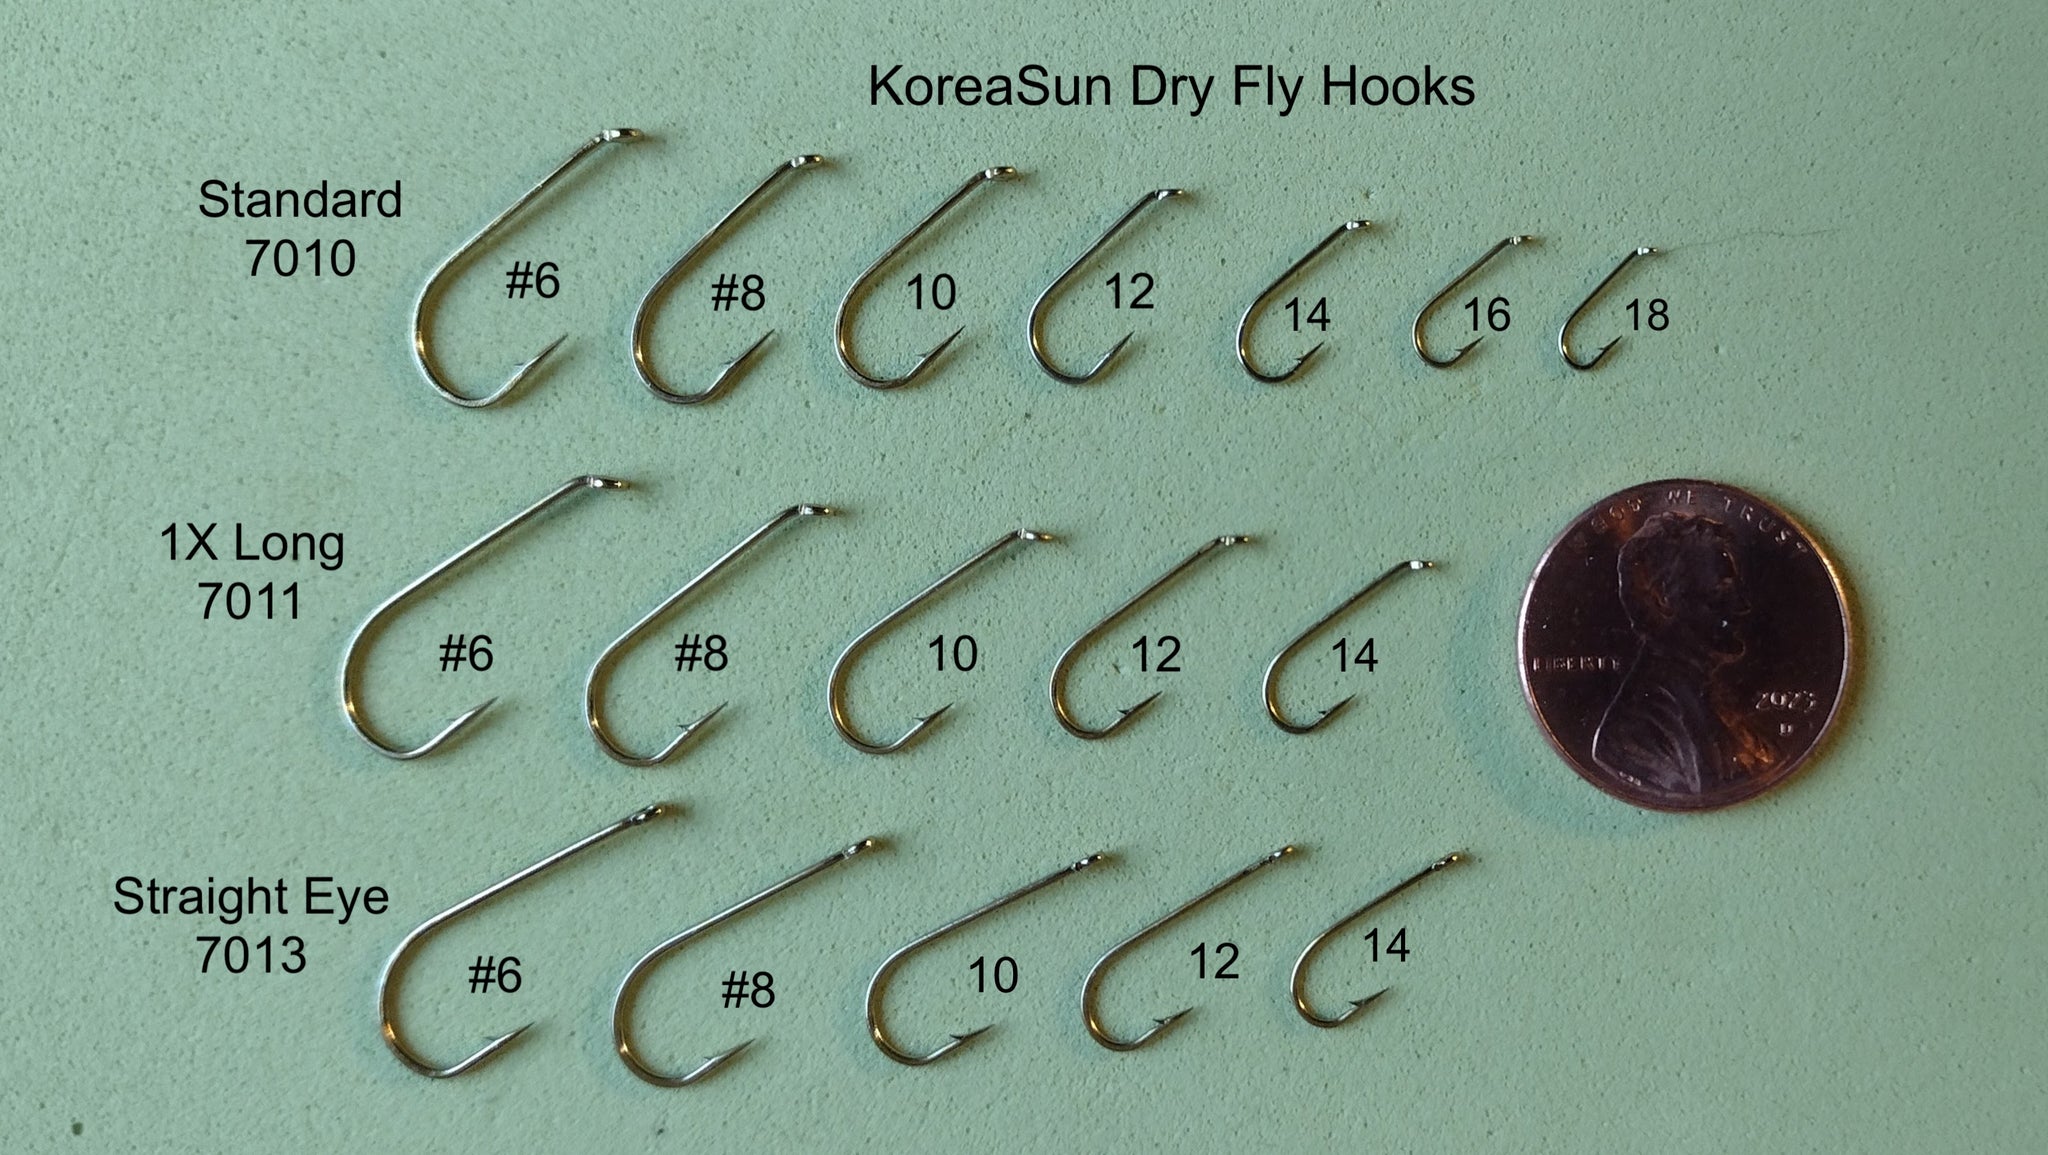 KoreaSun Dry Fly Hook Models